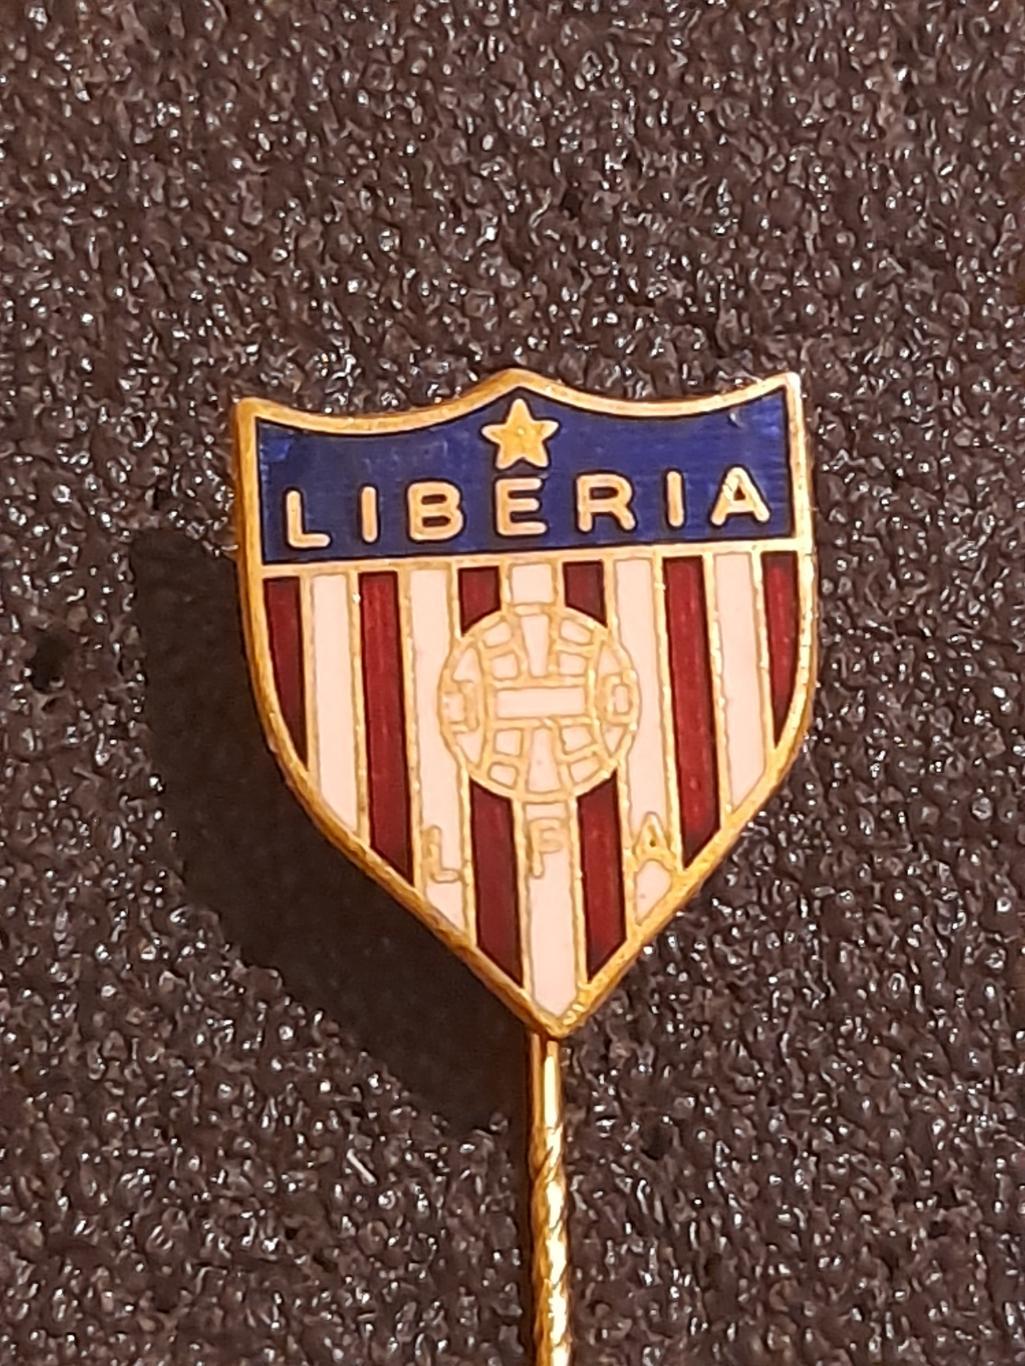 Ліберія Федерація футболу/Liberia Football Federation(1)